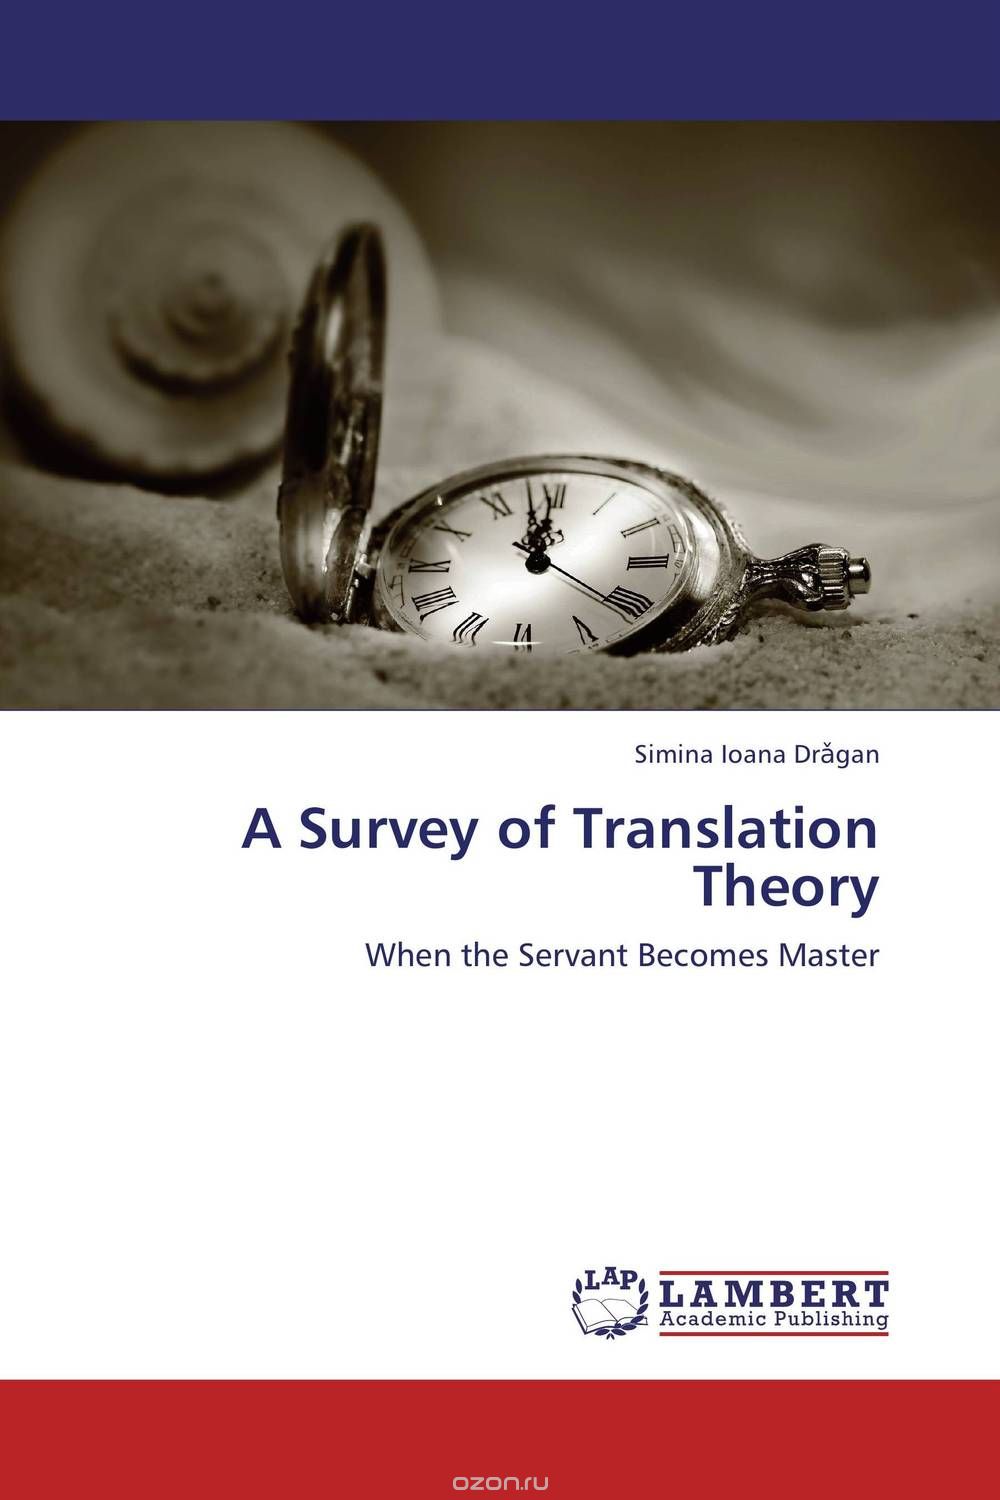 Скачать книгу "A Survey of Translation Theory"